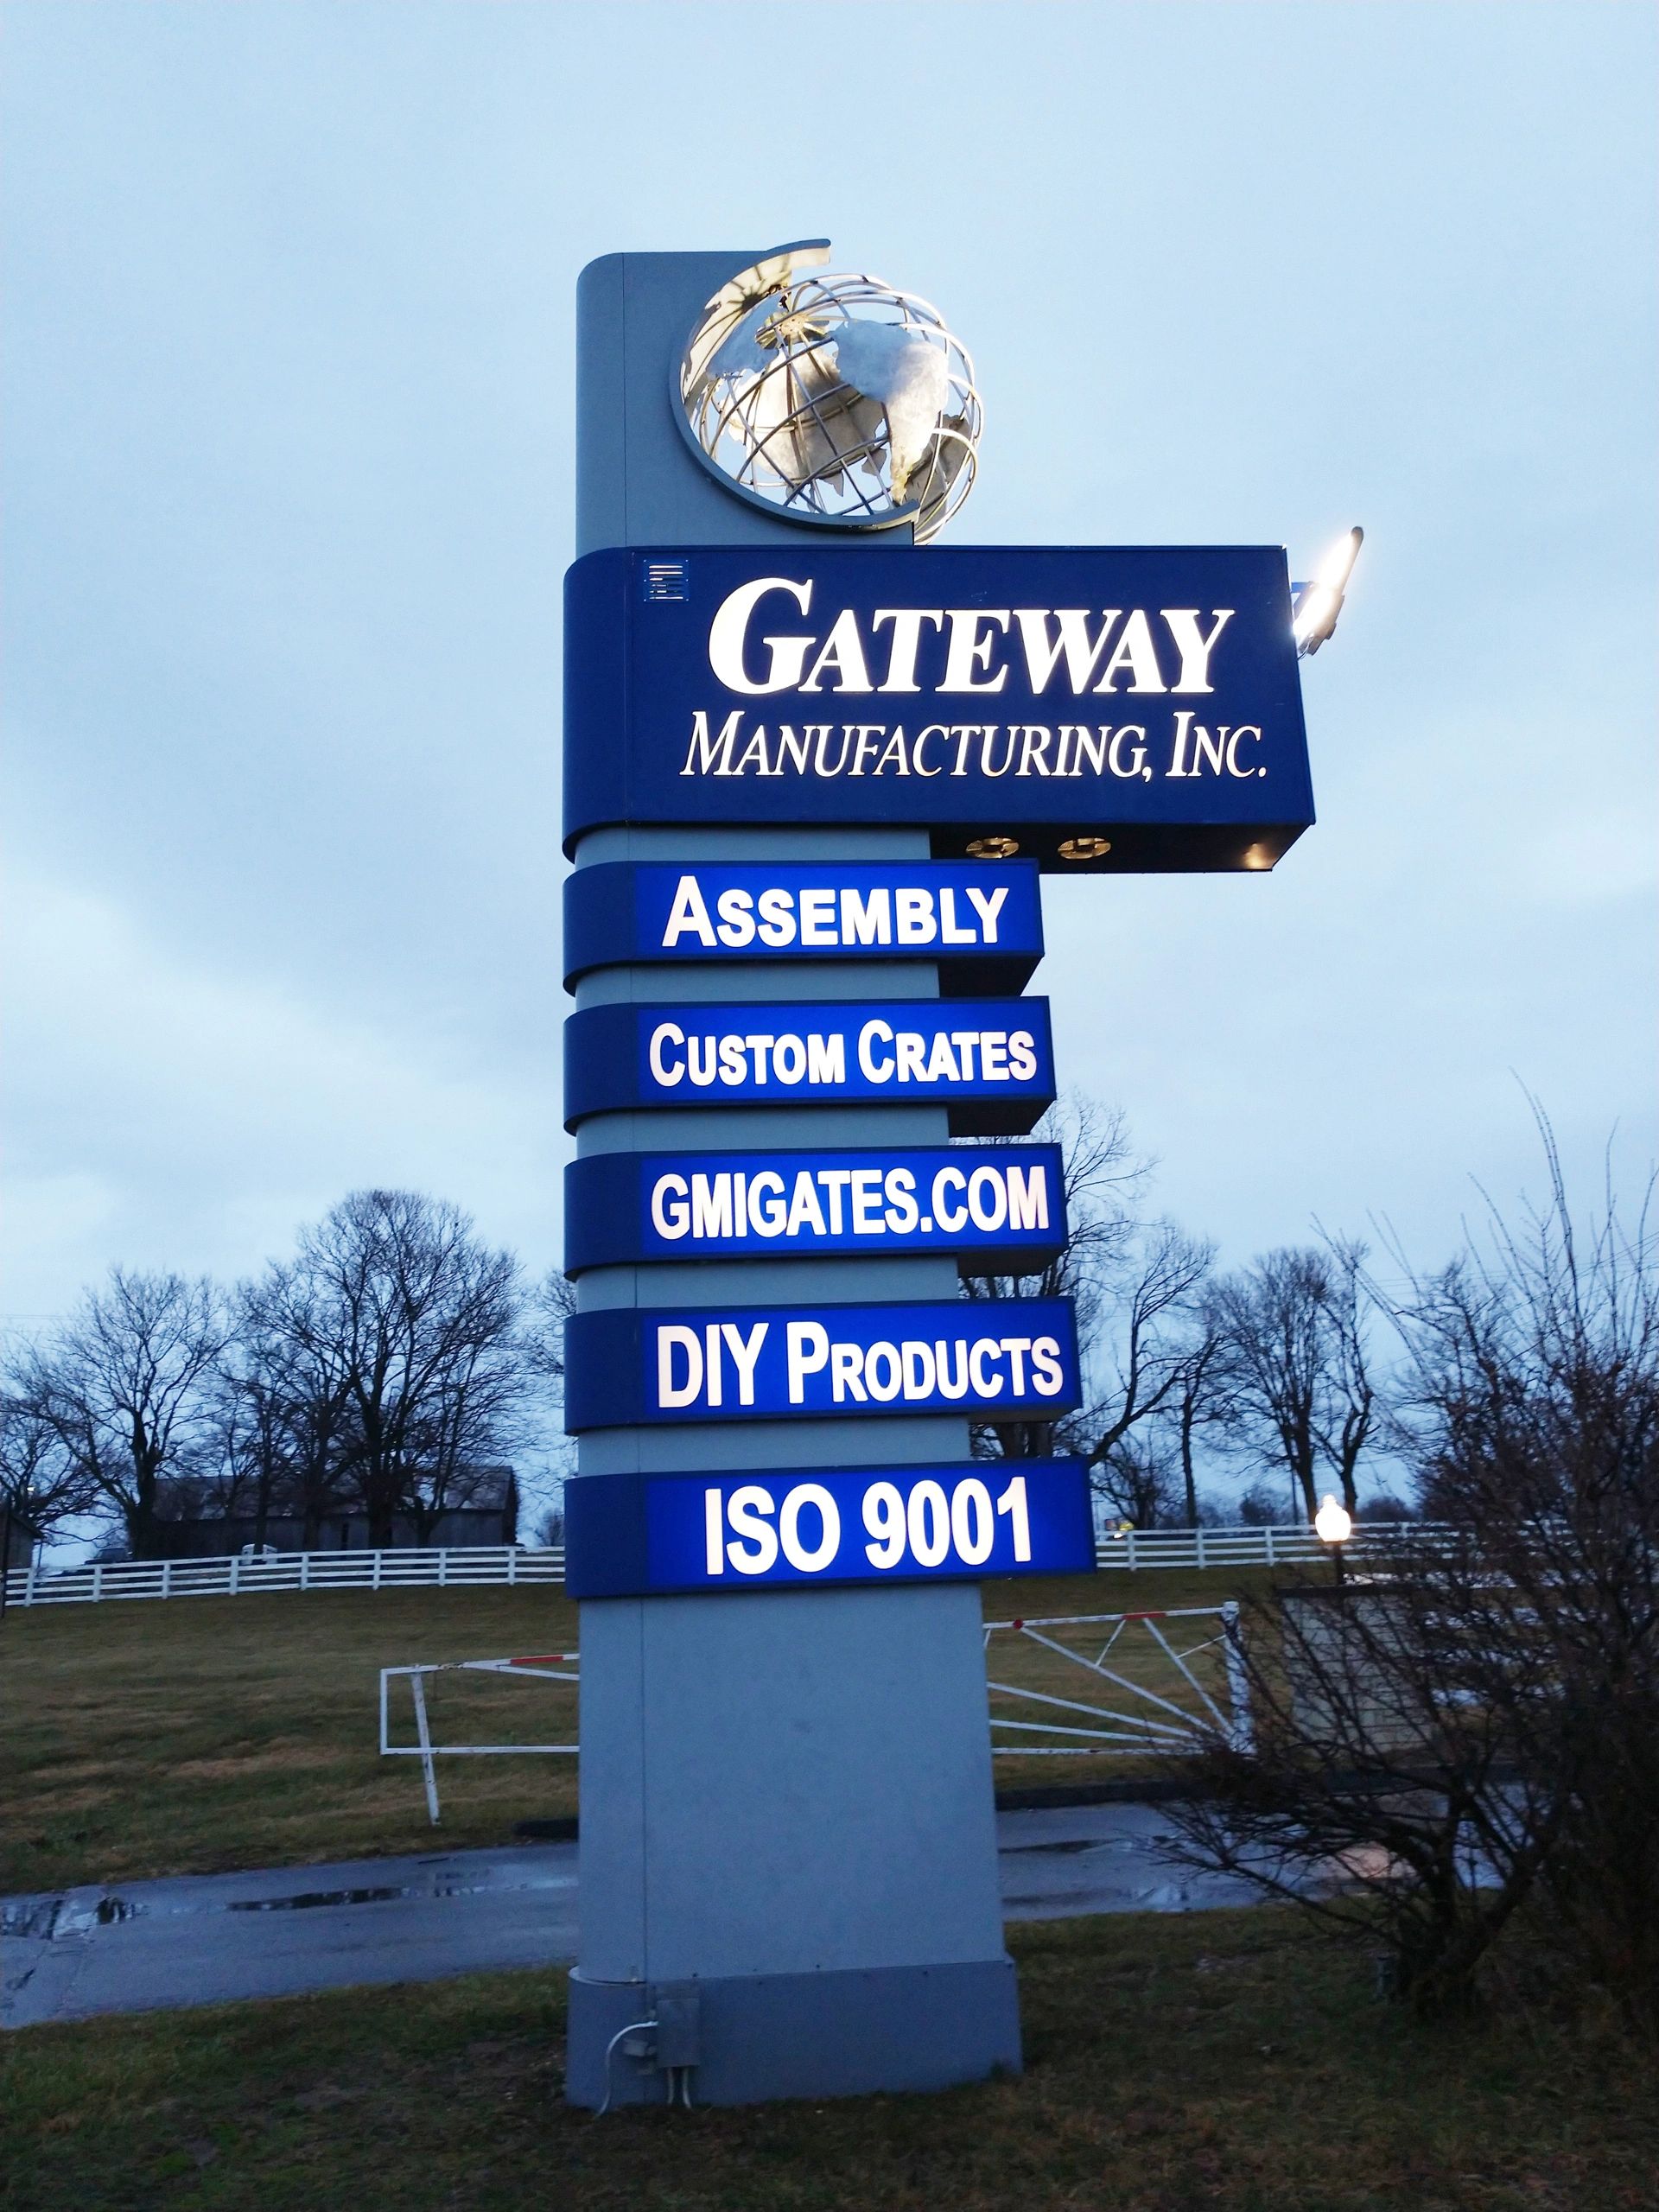 (c) Gatewaymanufacturing.com